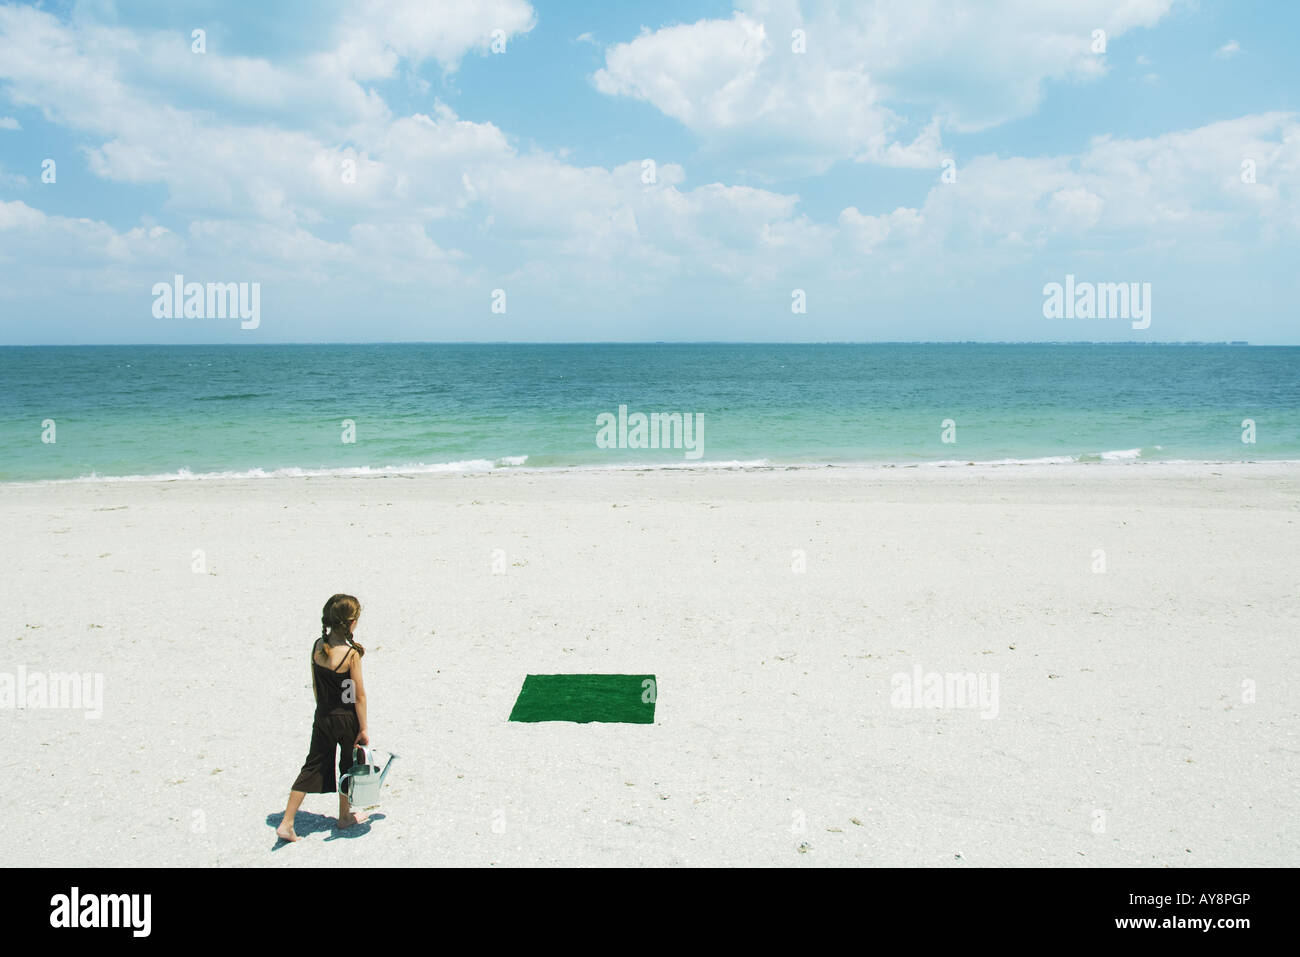 Fille à la plage à pied en direction de patch de gazon artificiel, exerçant son arrosoir, vue arrière Banque D'Images